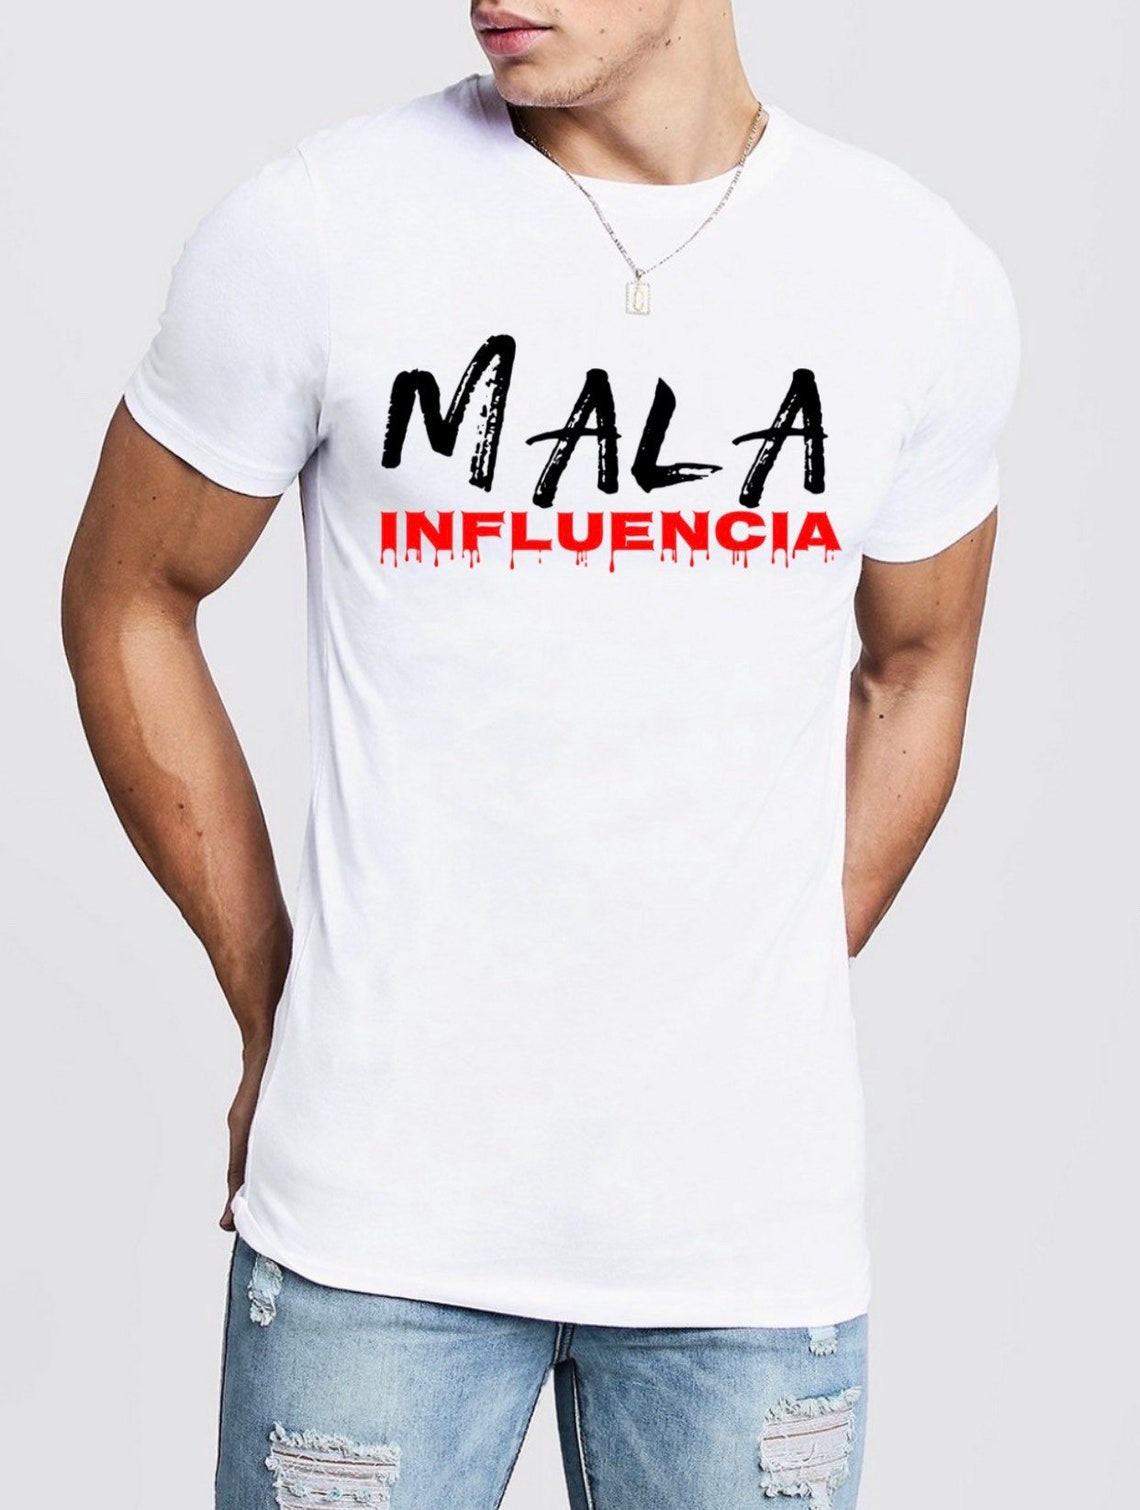 Mala Influencia Unisex Shirt | Etsy